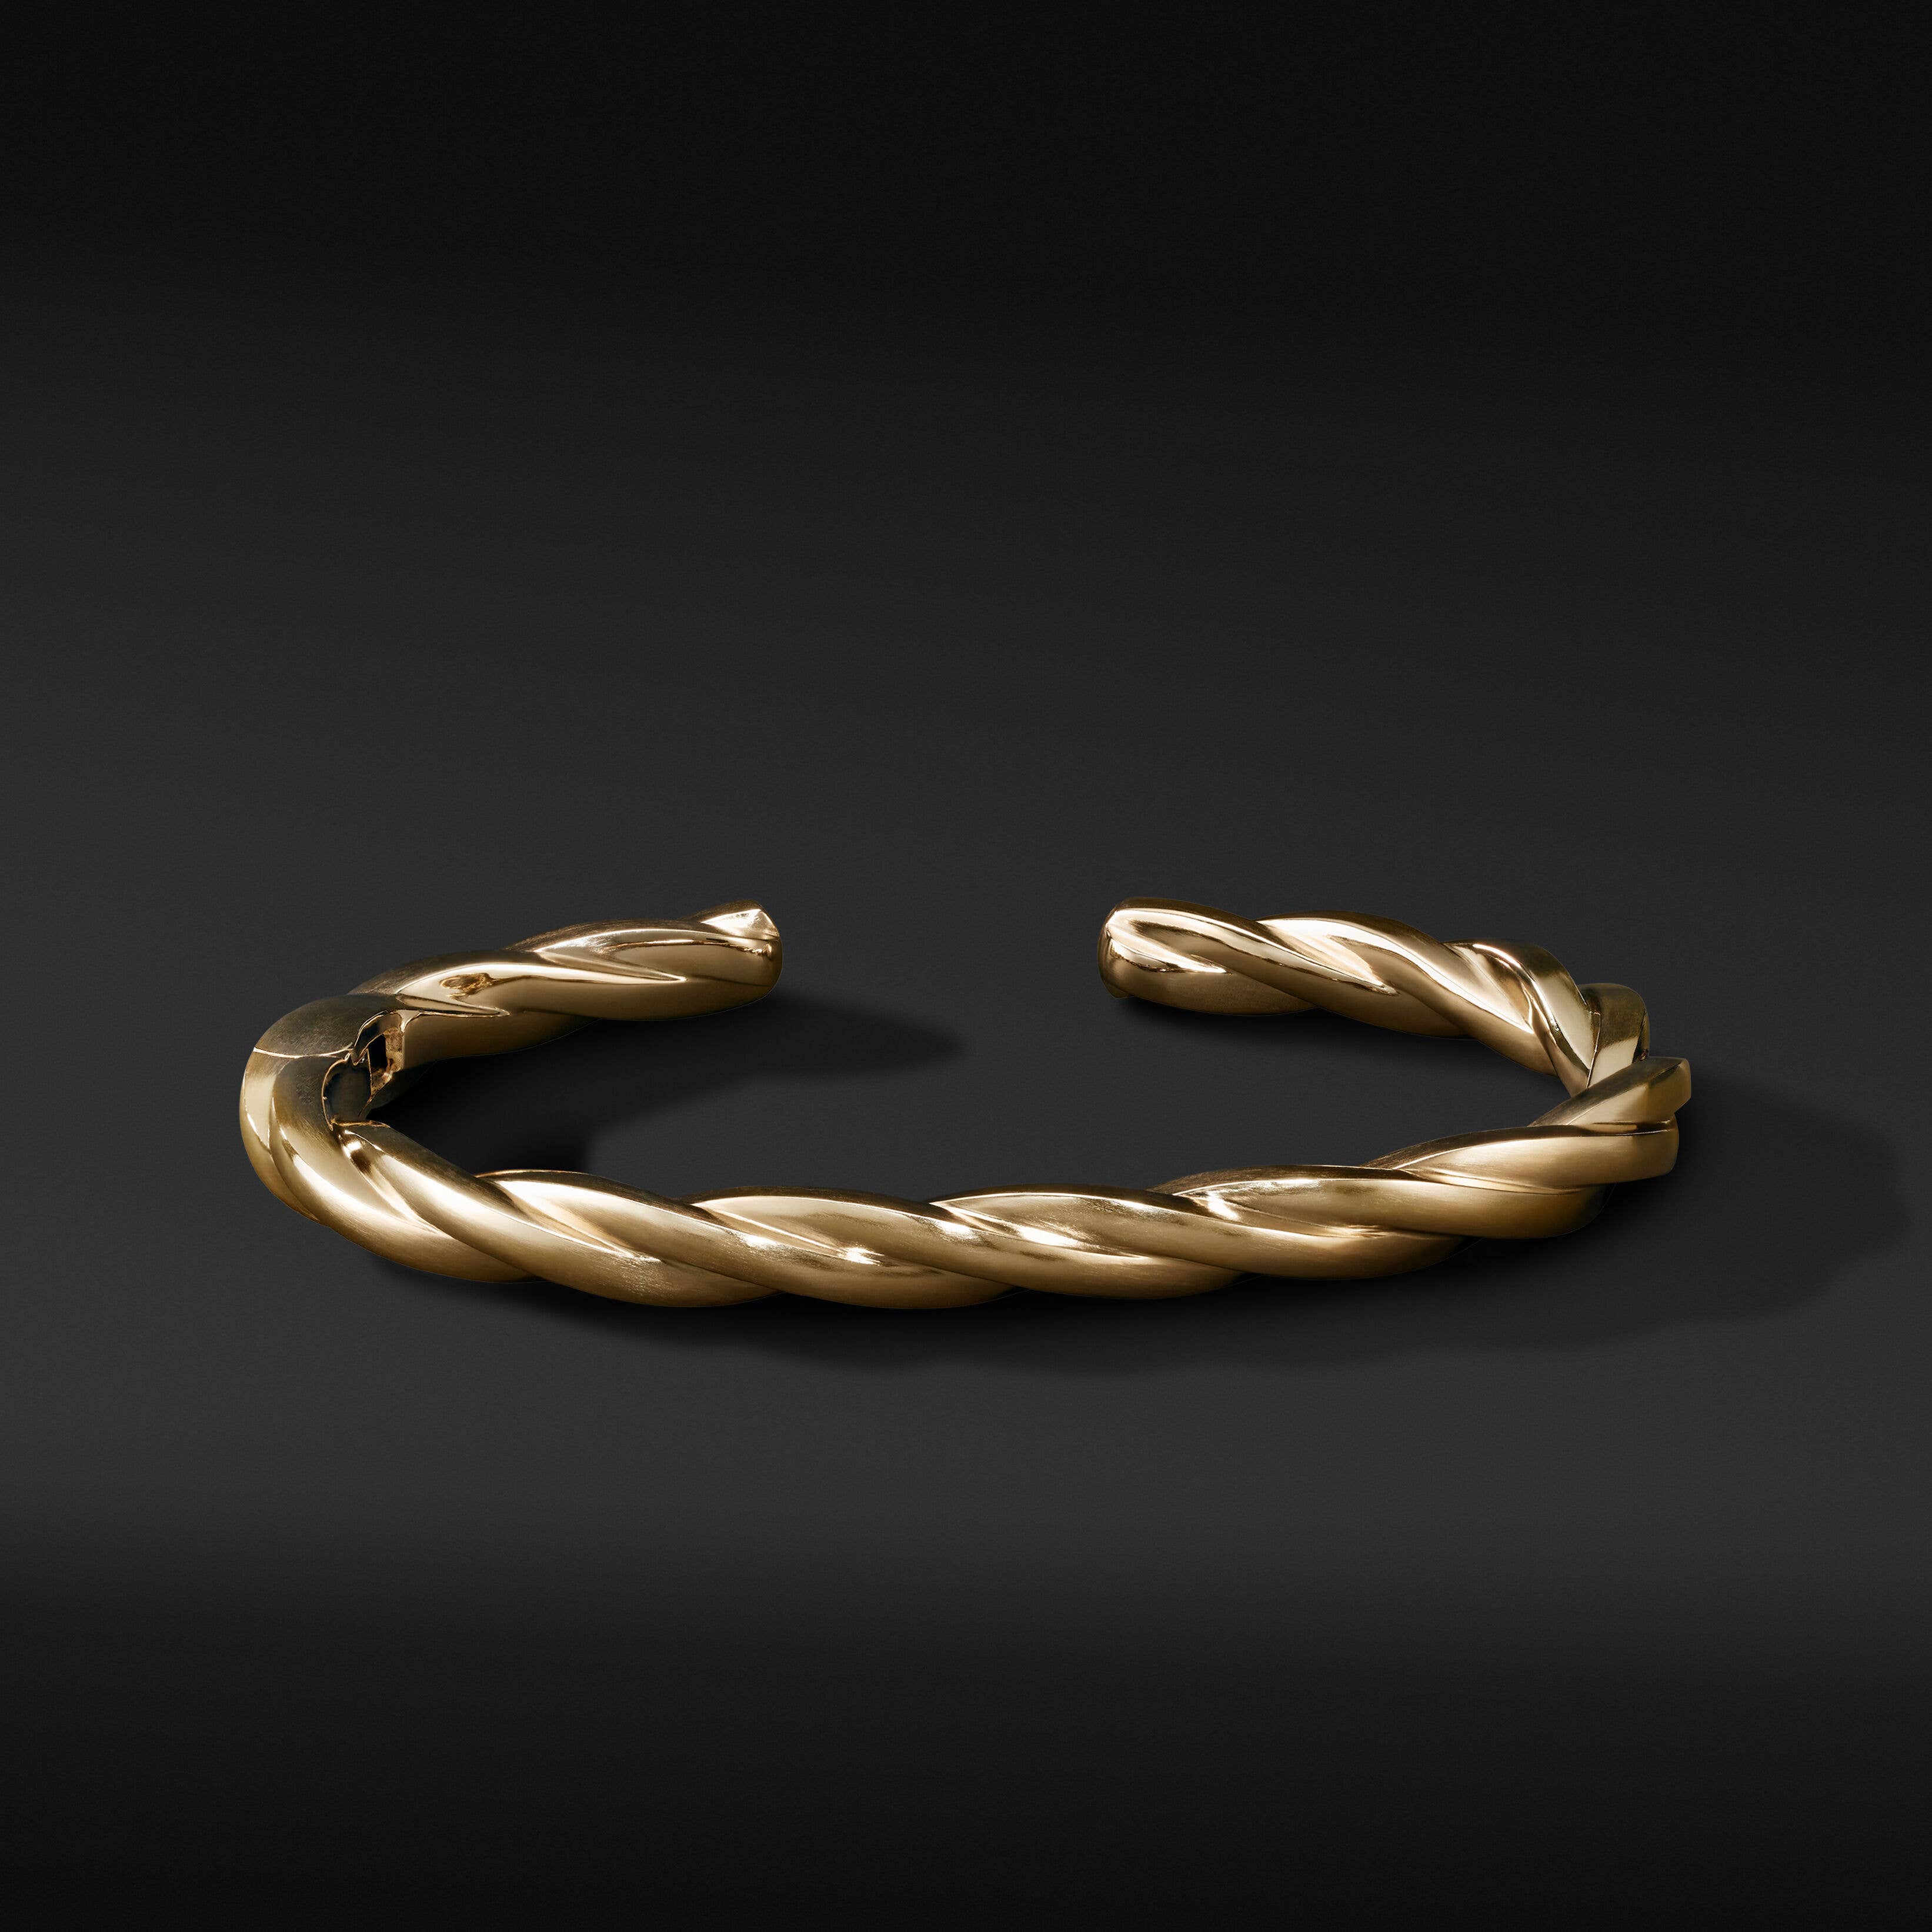 DY Helios™ Cuff Bracelet in 18K Yellow Gold